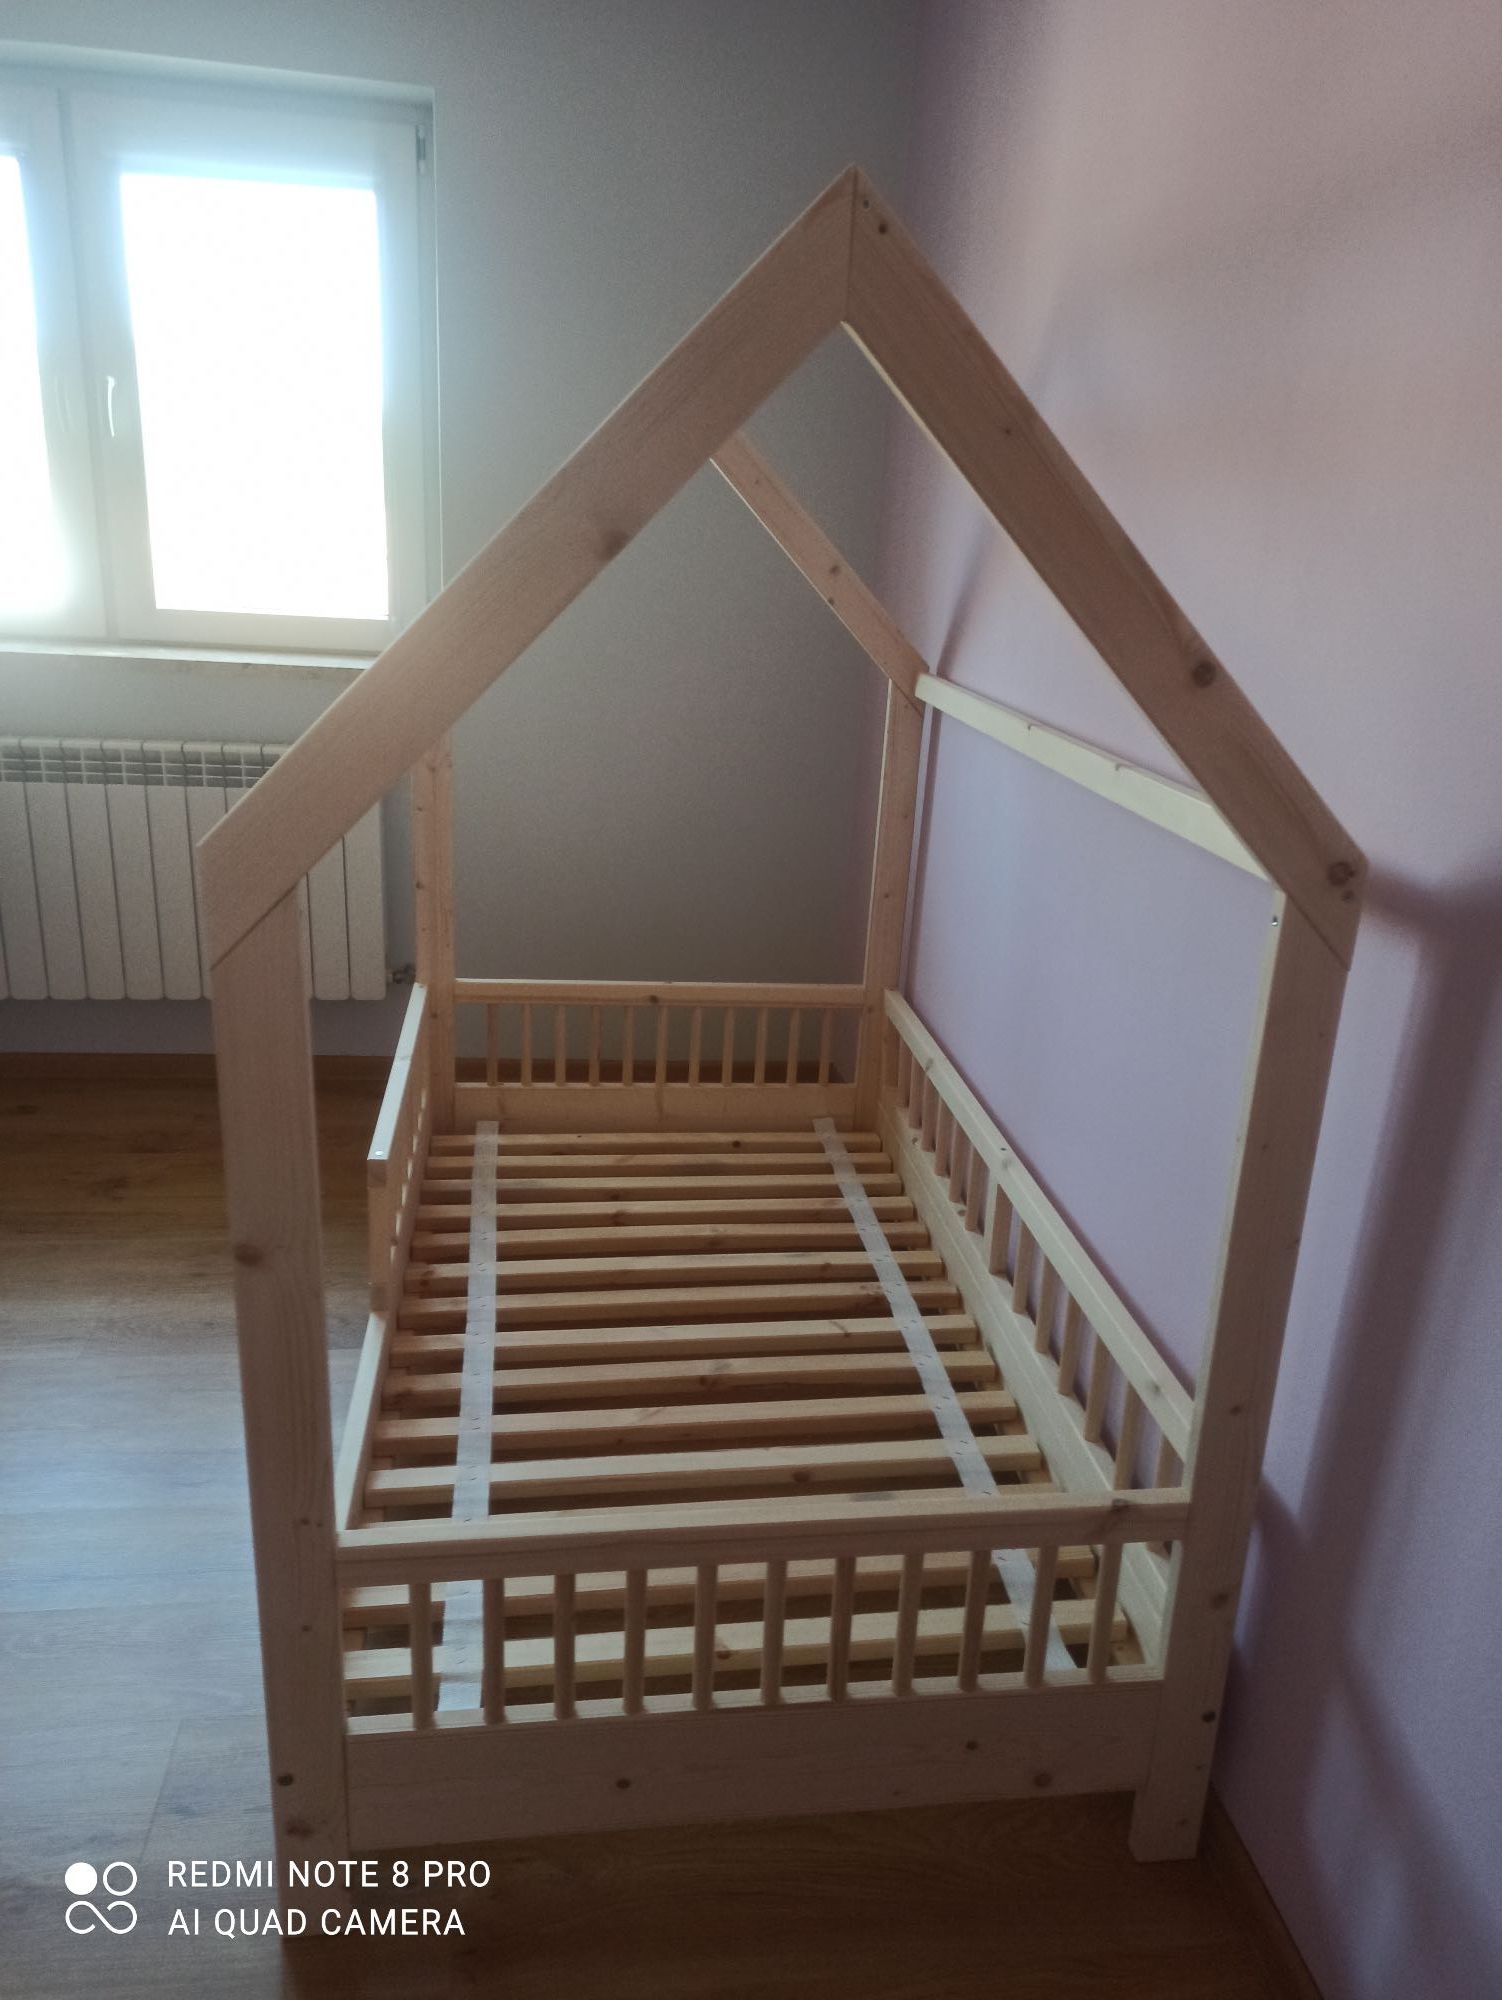 Łóżko domek, styl skandynawski, drewniane 160x90